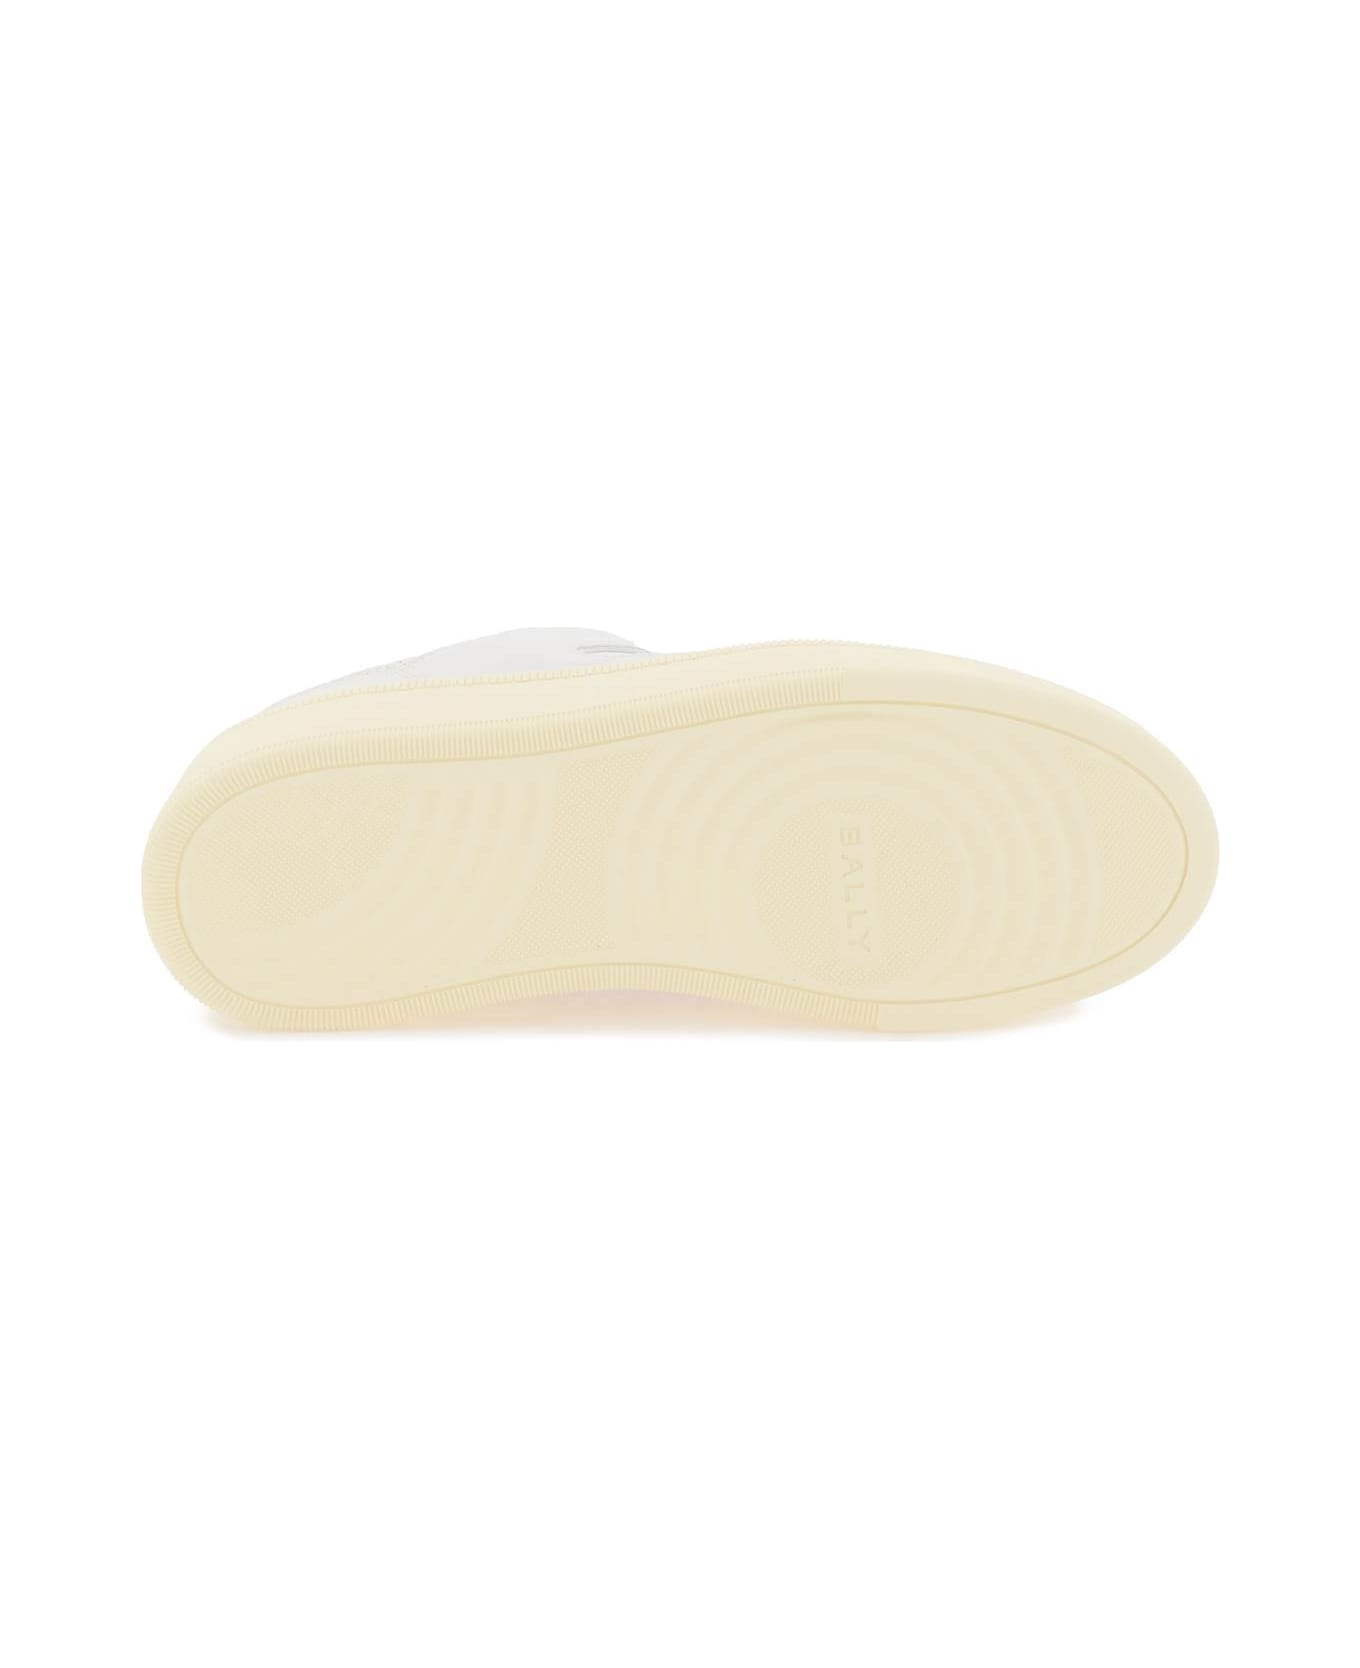 Bally Leather Riweira Sneakers - WHITE ROSA (White)